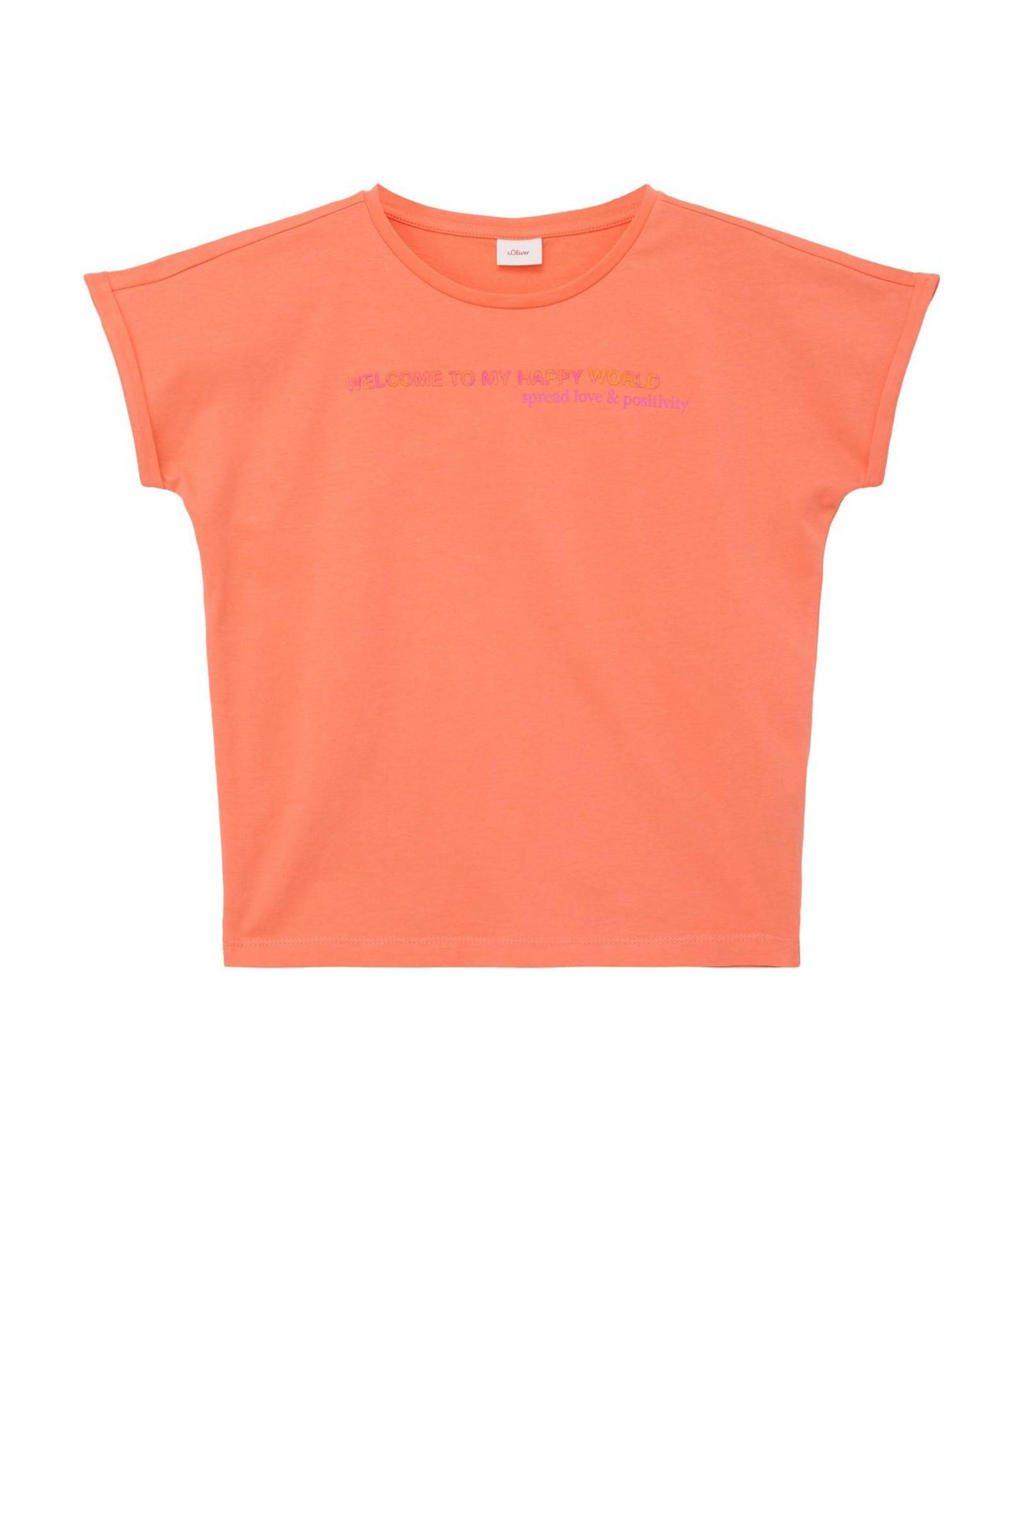 s.Oliver T-shirt oranje